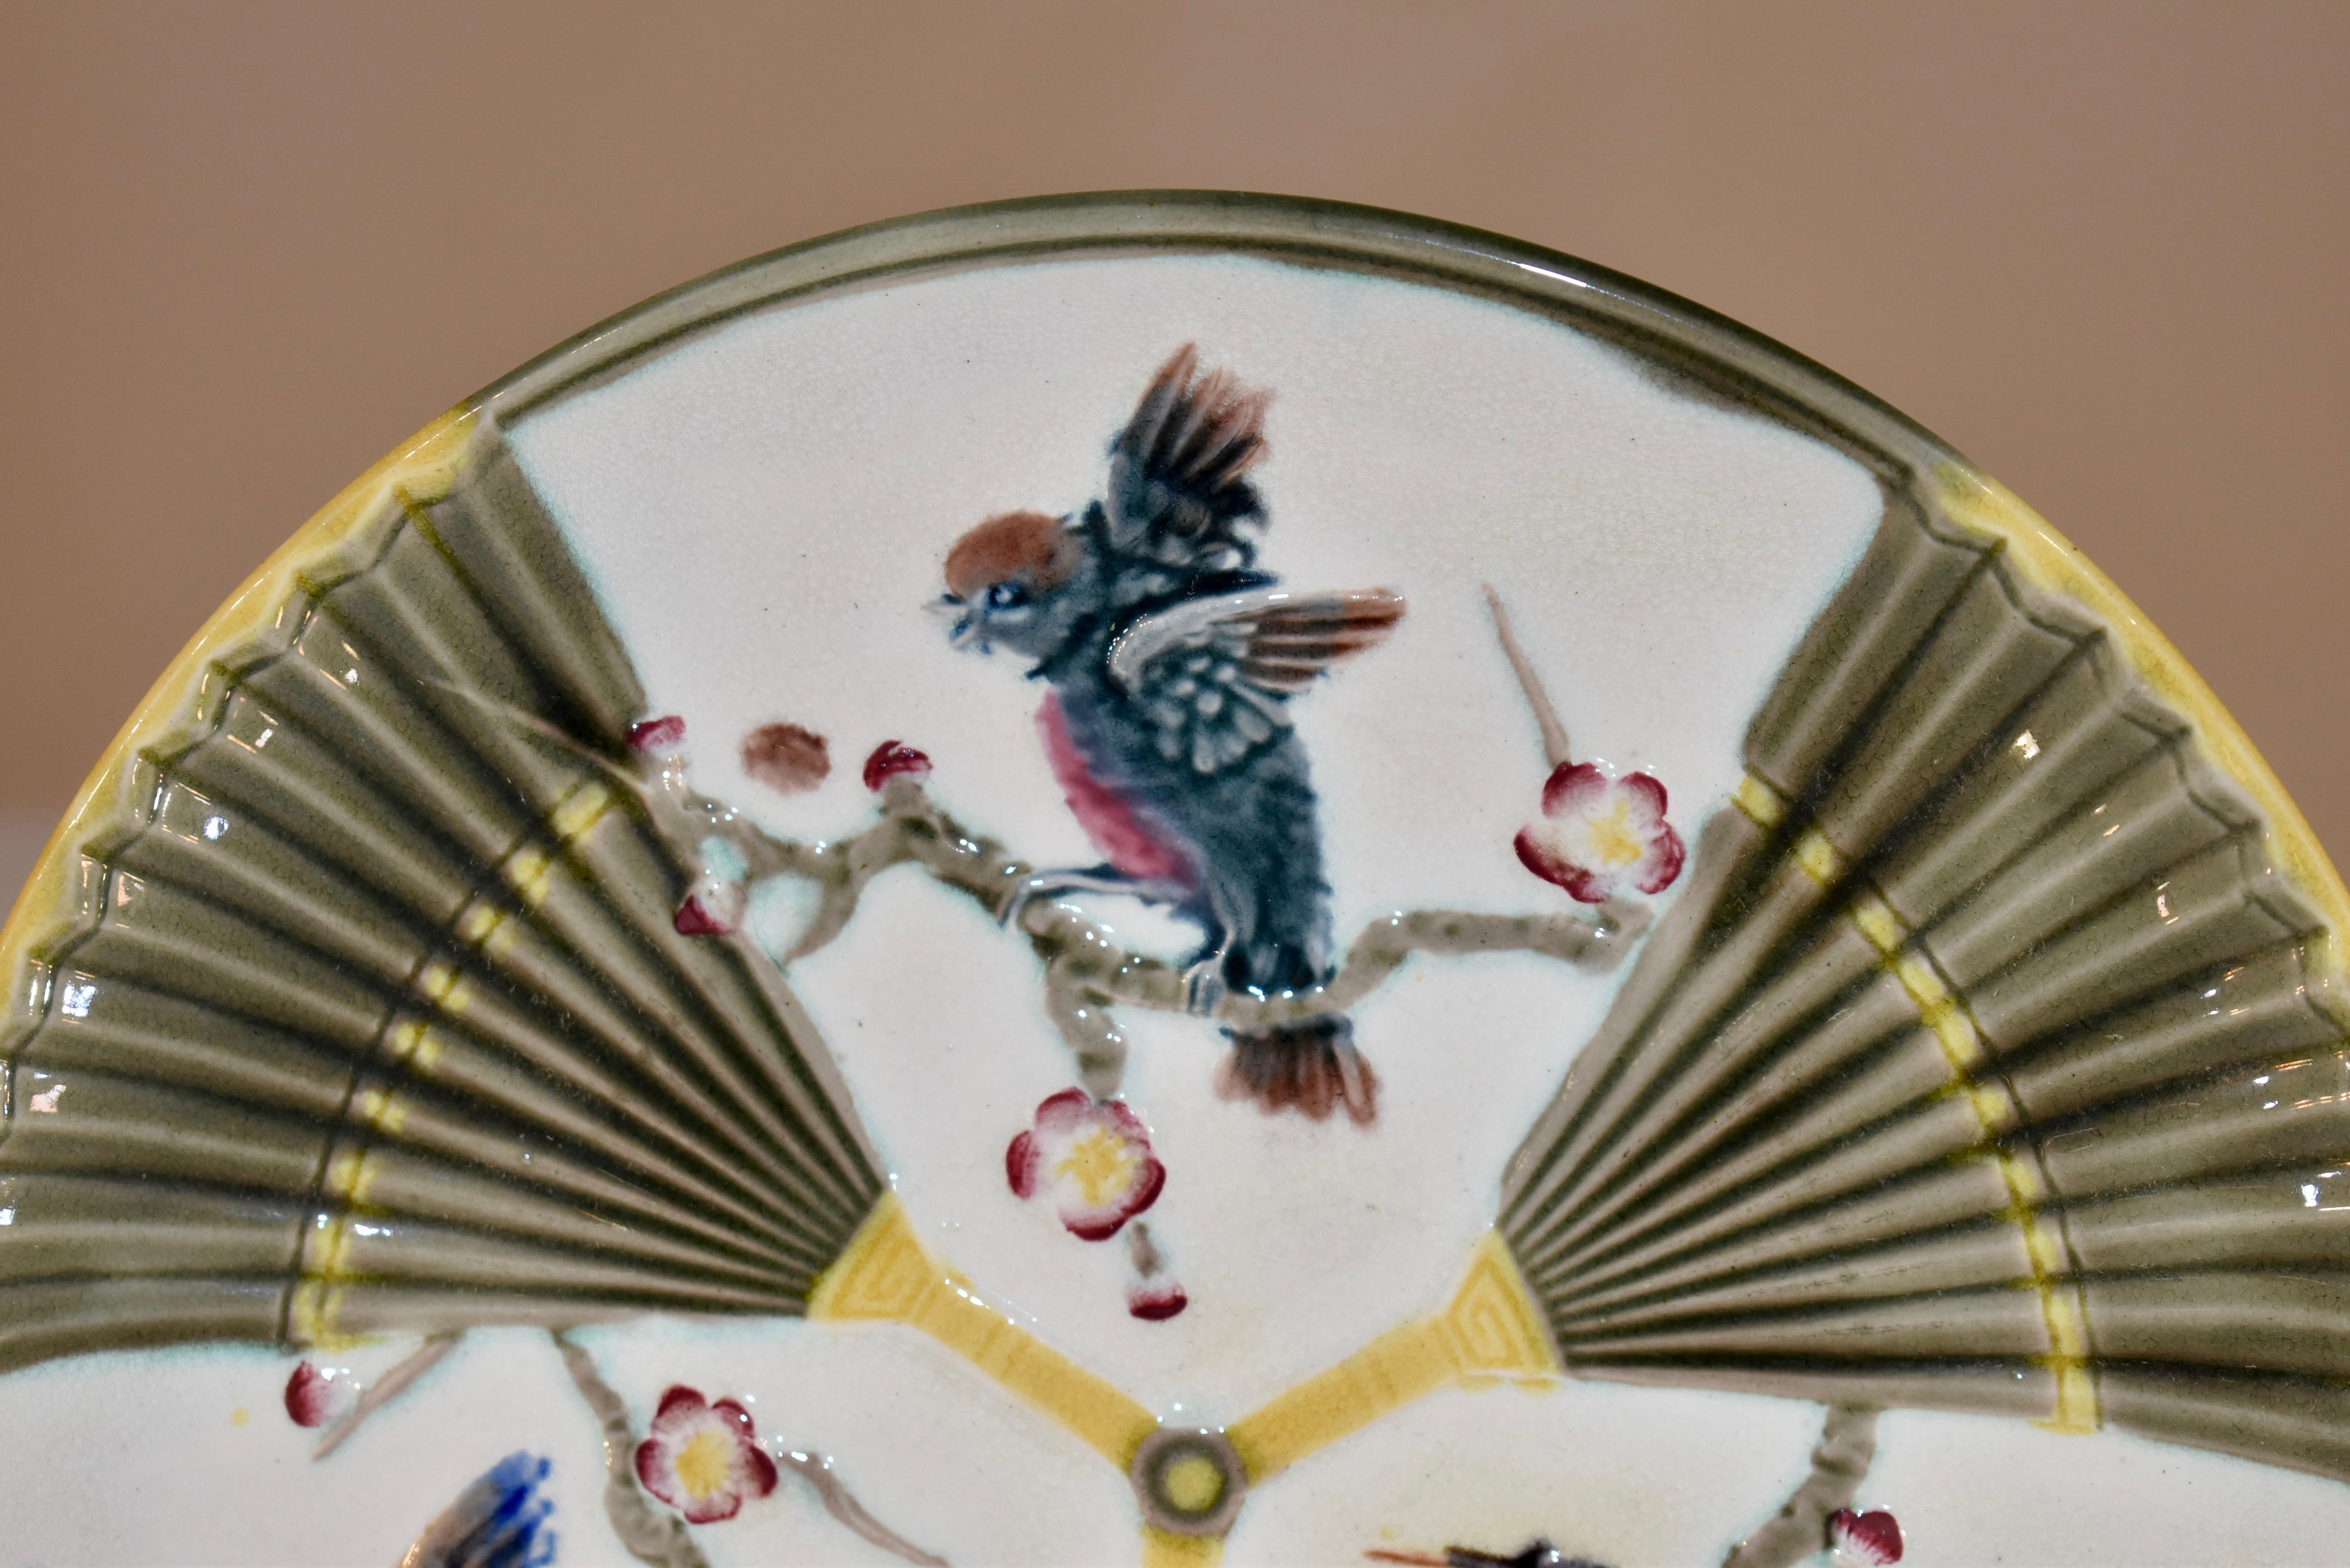 Assiette à motif d'oiseau et d'éventail en majolique du 19e siècle en Angleterre. La marque WEDGWOOD est imprimée au dos de l'assiette. Les couleurs sont vives et jolies.